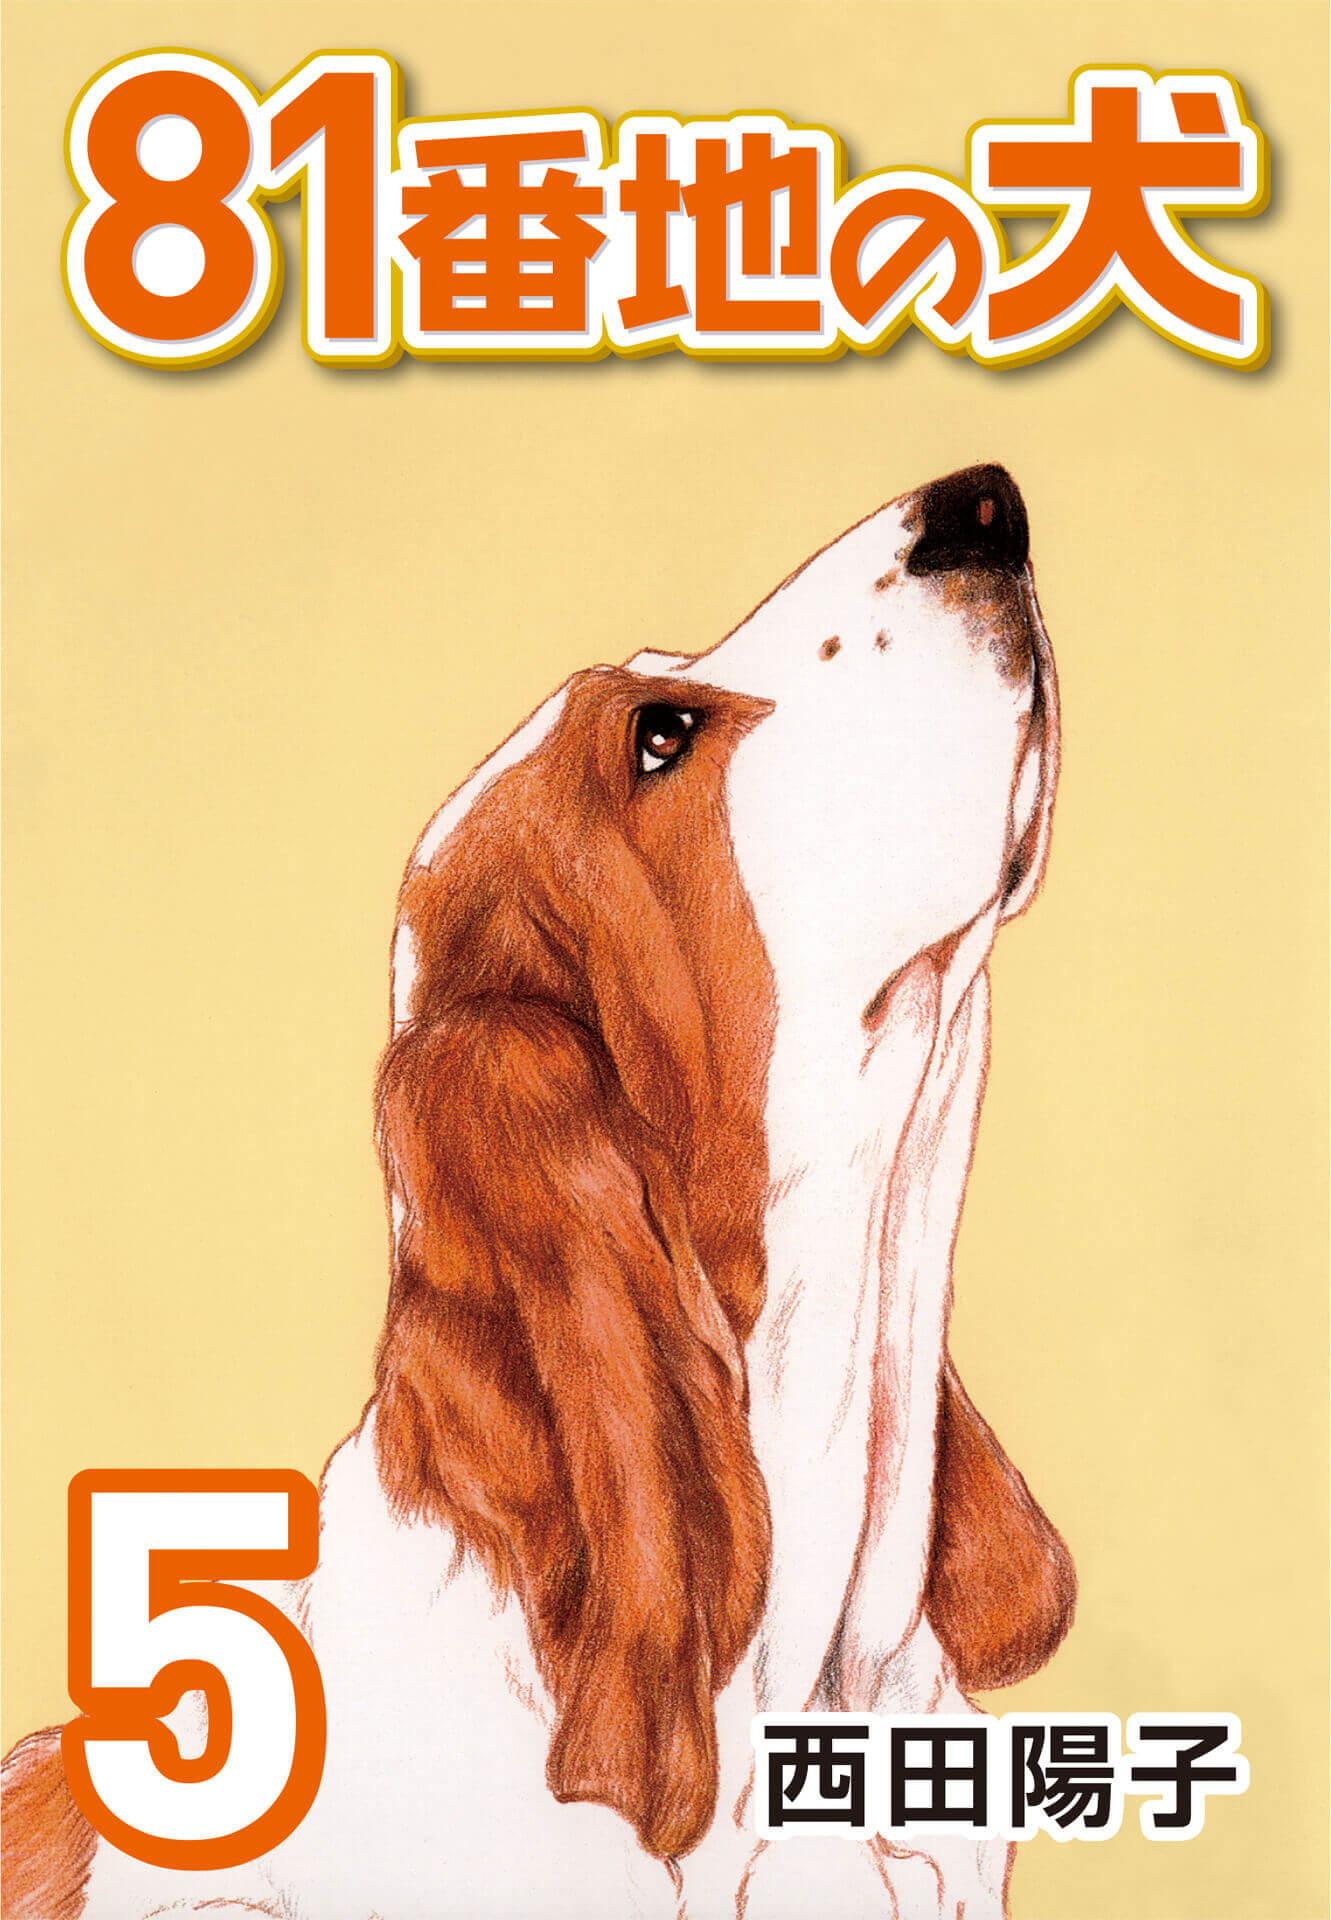 81番地の犬 (5)